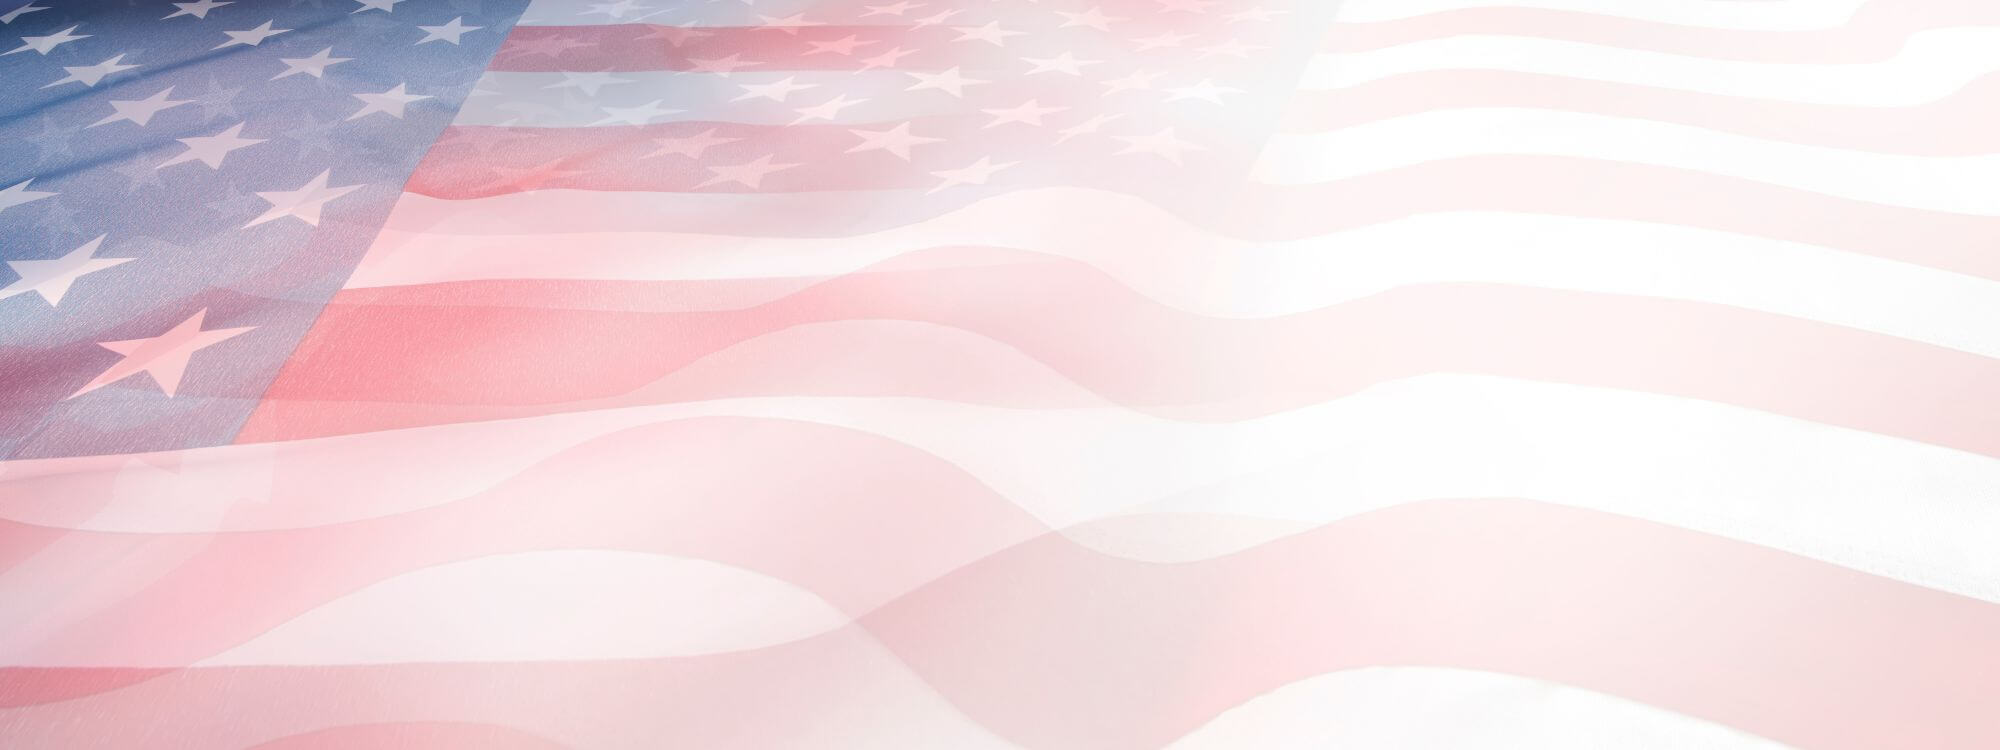 Flag Background png download - 1500*938 - Free Transparent Flag